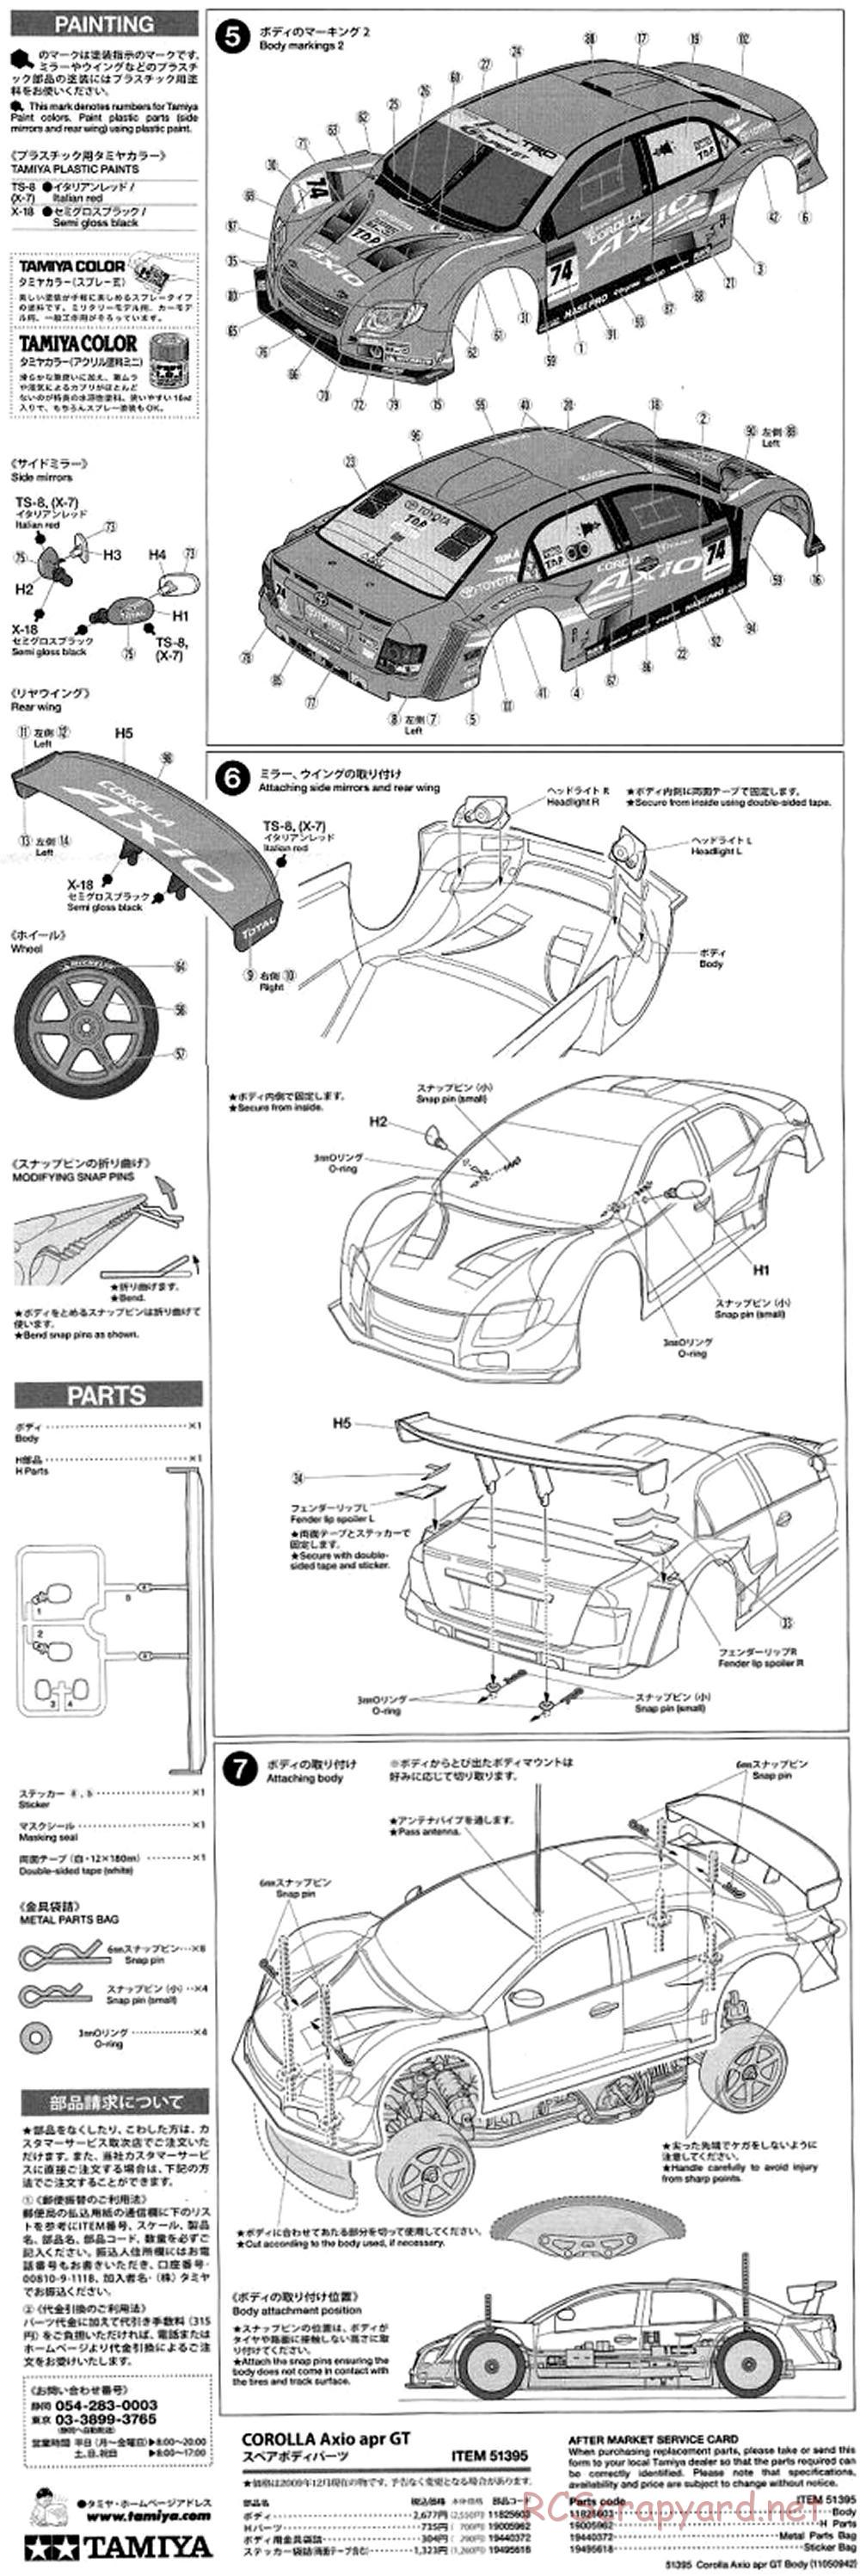 Tamiya - Corolla Axio apr GT - TA05 Ver.II Chassis - Body Manual - Page 2